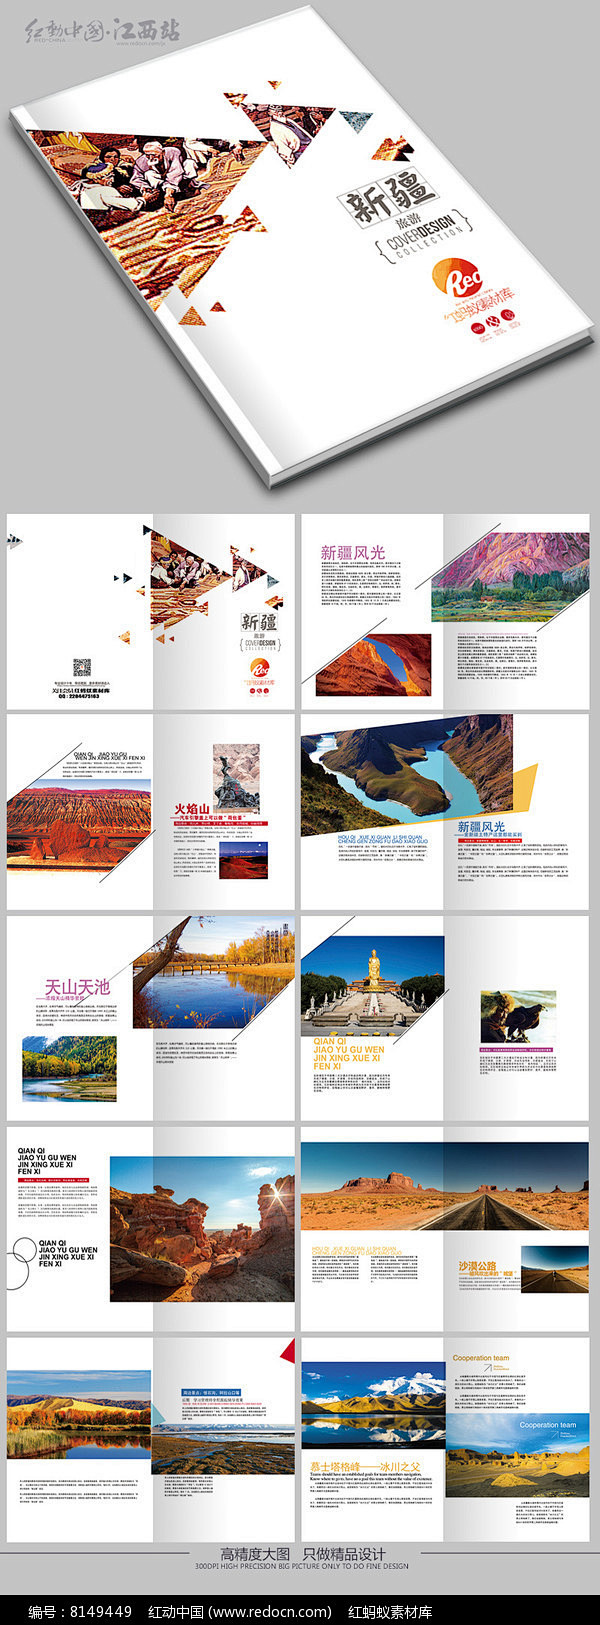 简约大气新疆旅游画册版式设计图片 旅游画...